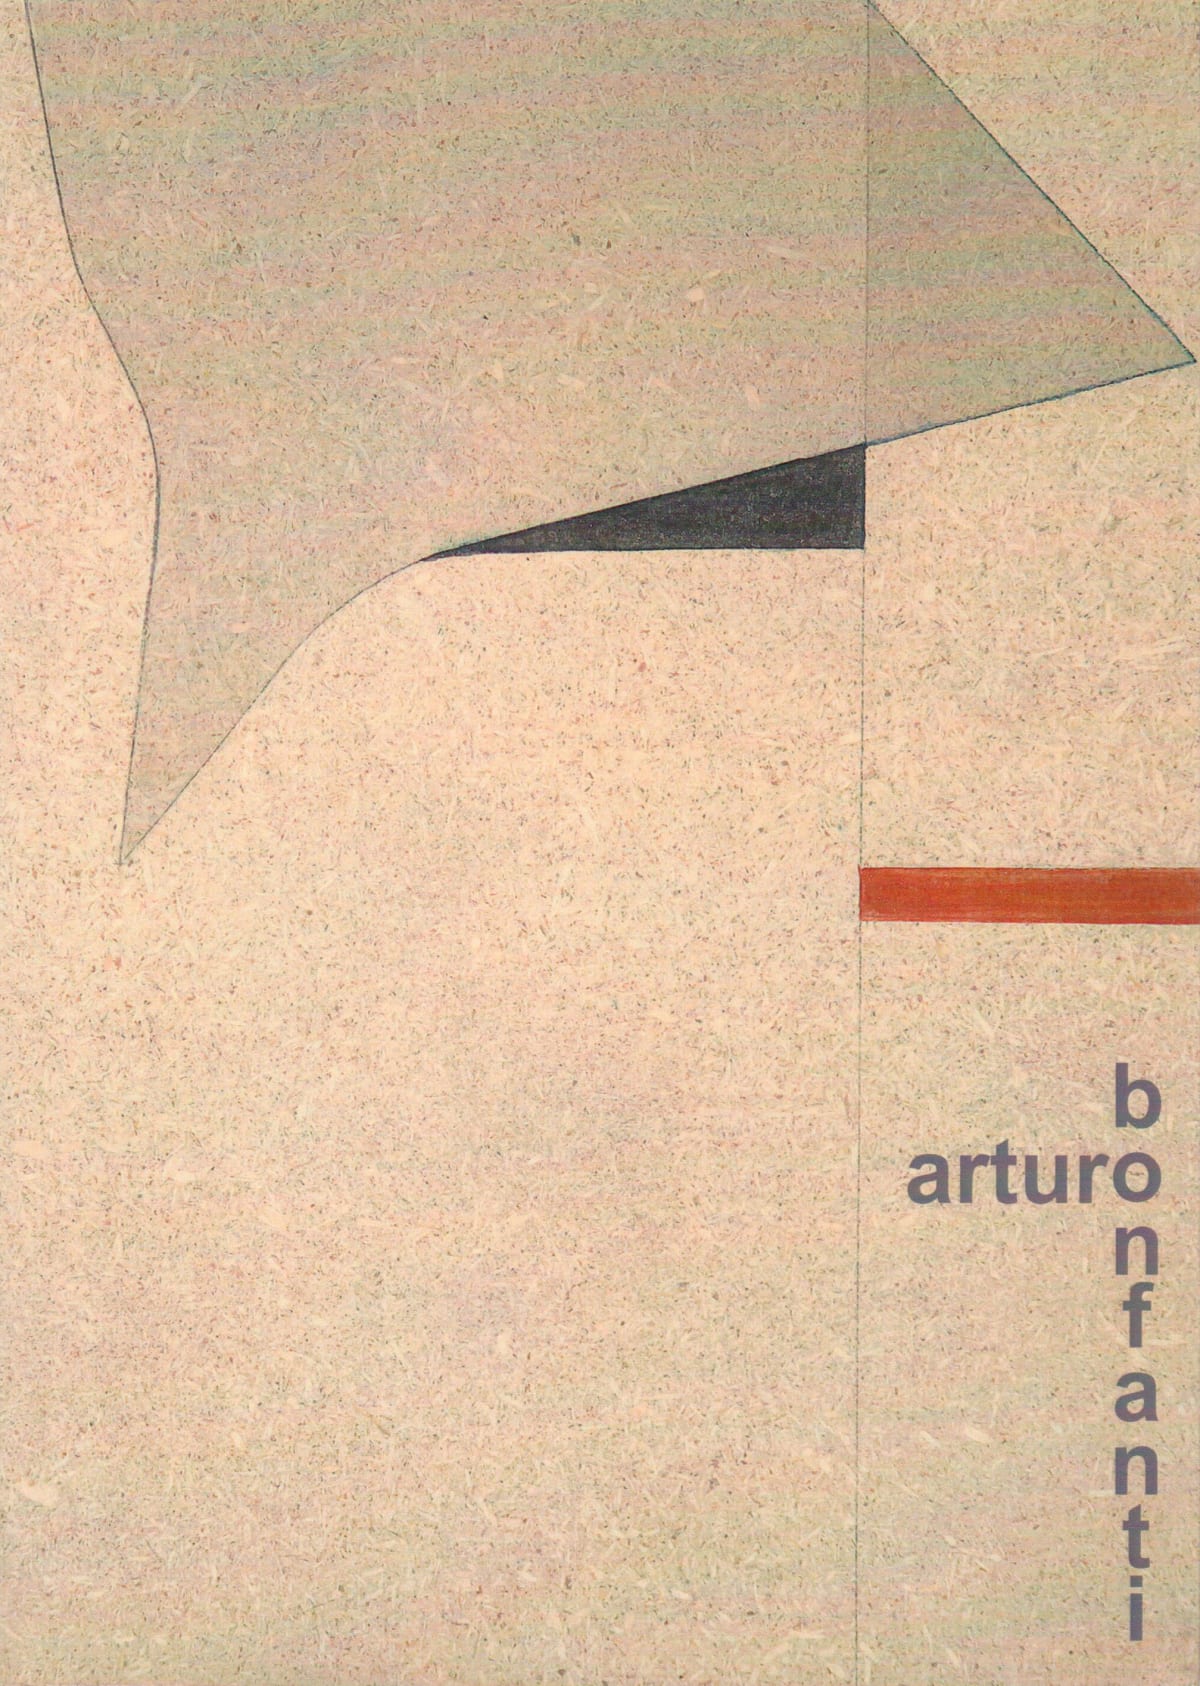 Arturo Bonfanti